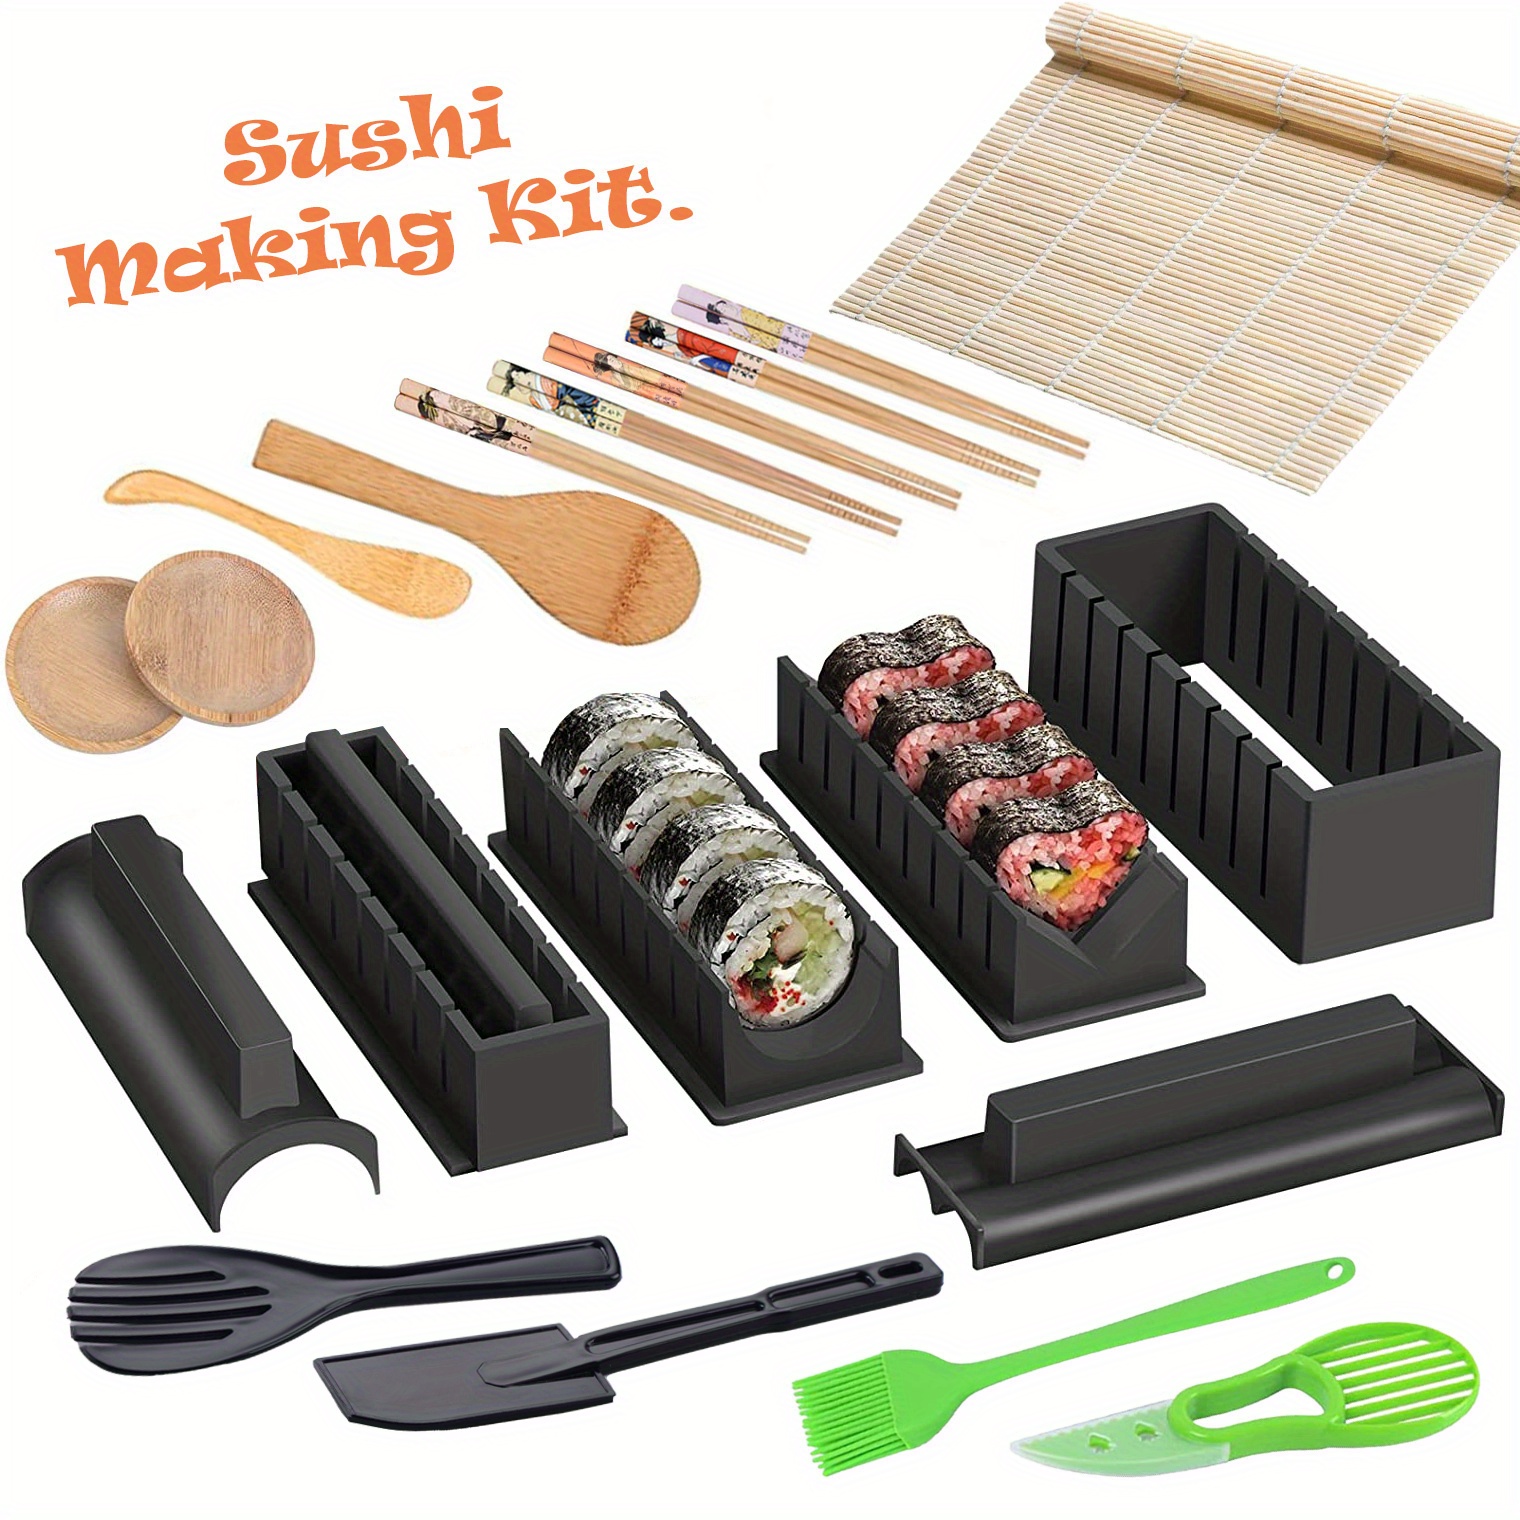 Yomo Sushi Maker – Sushi Maker Kit